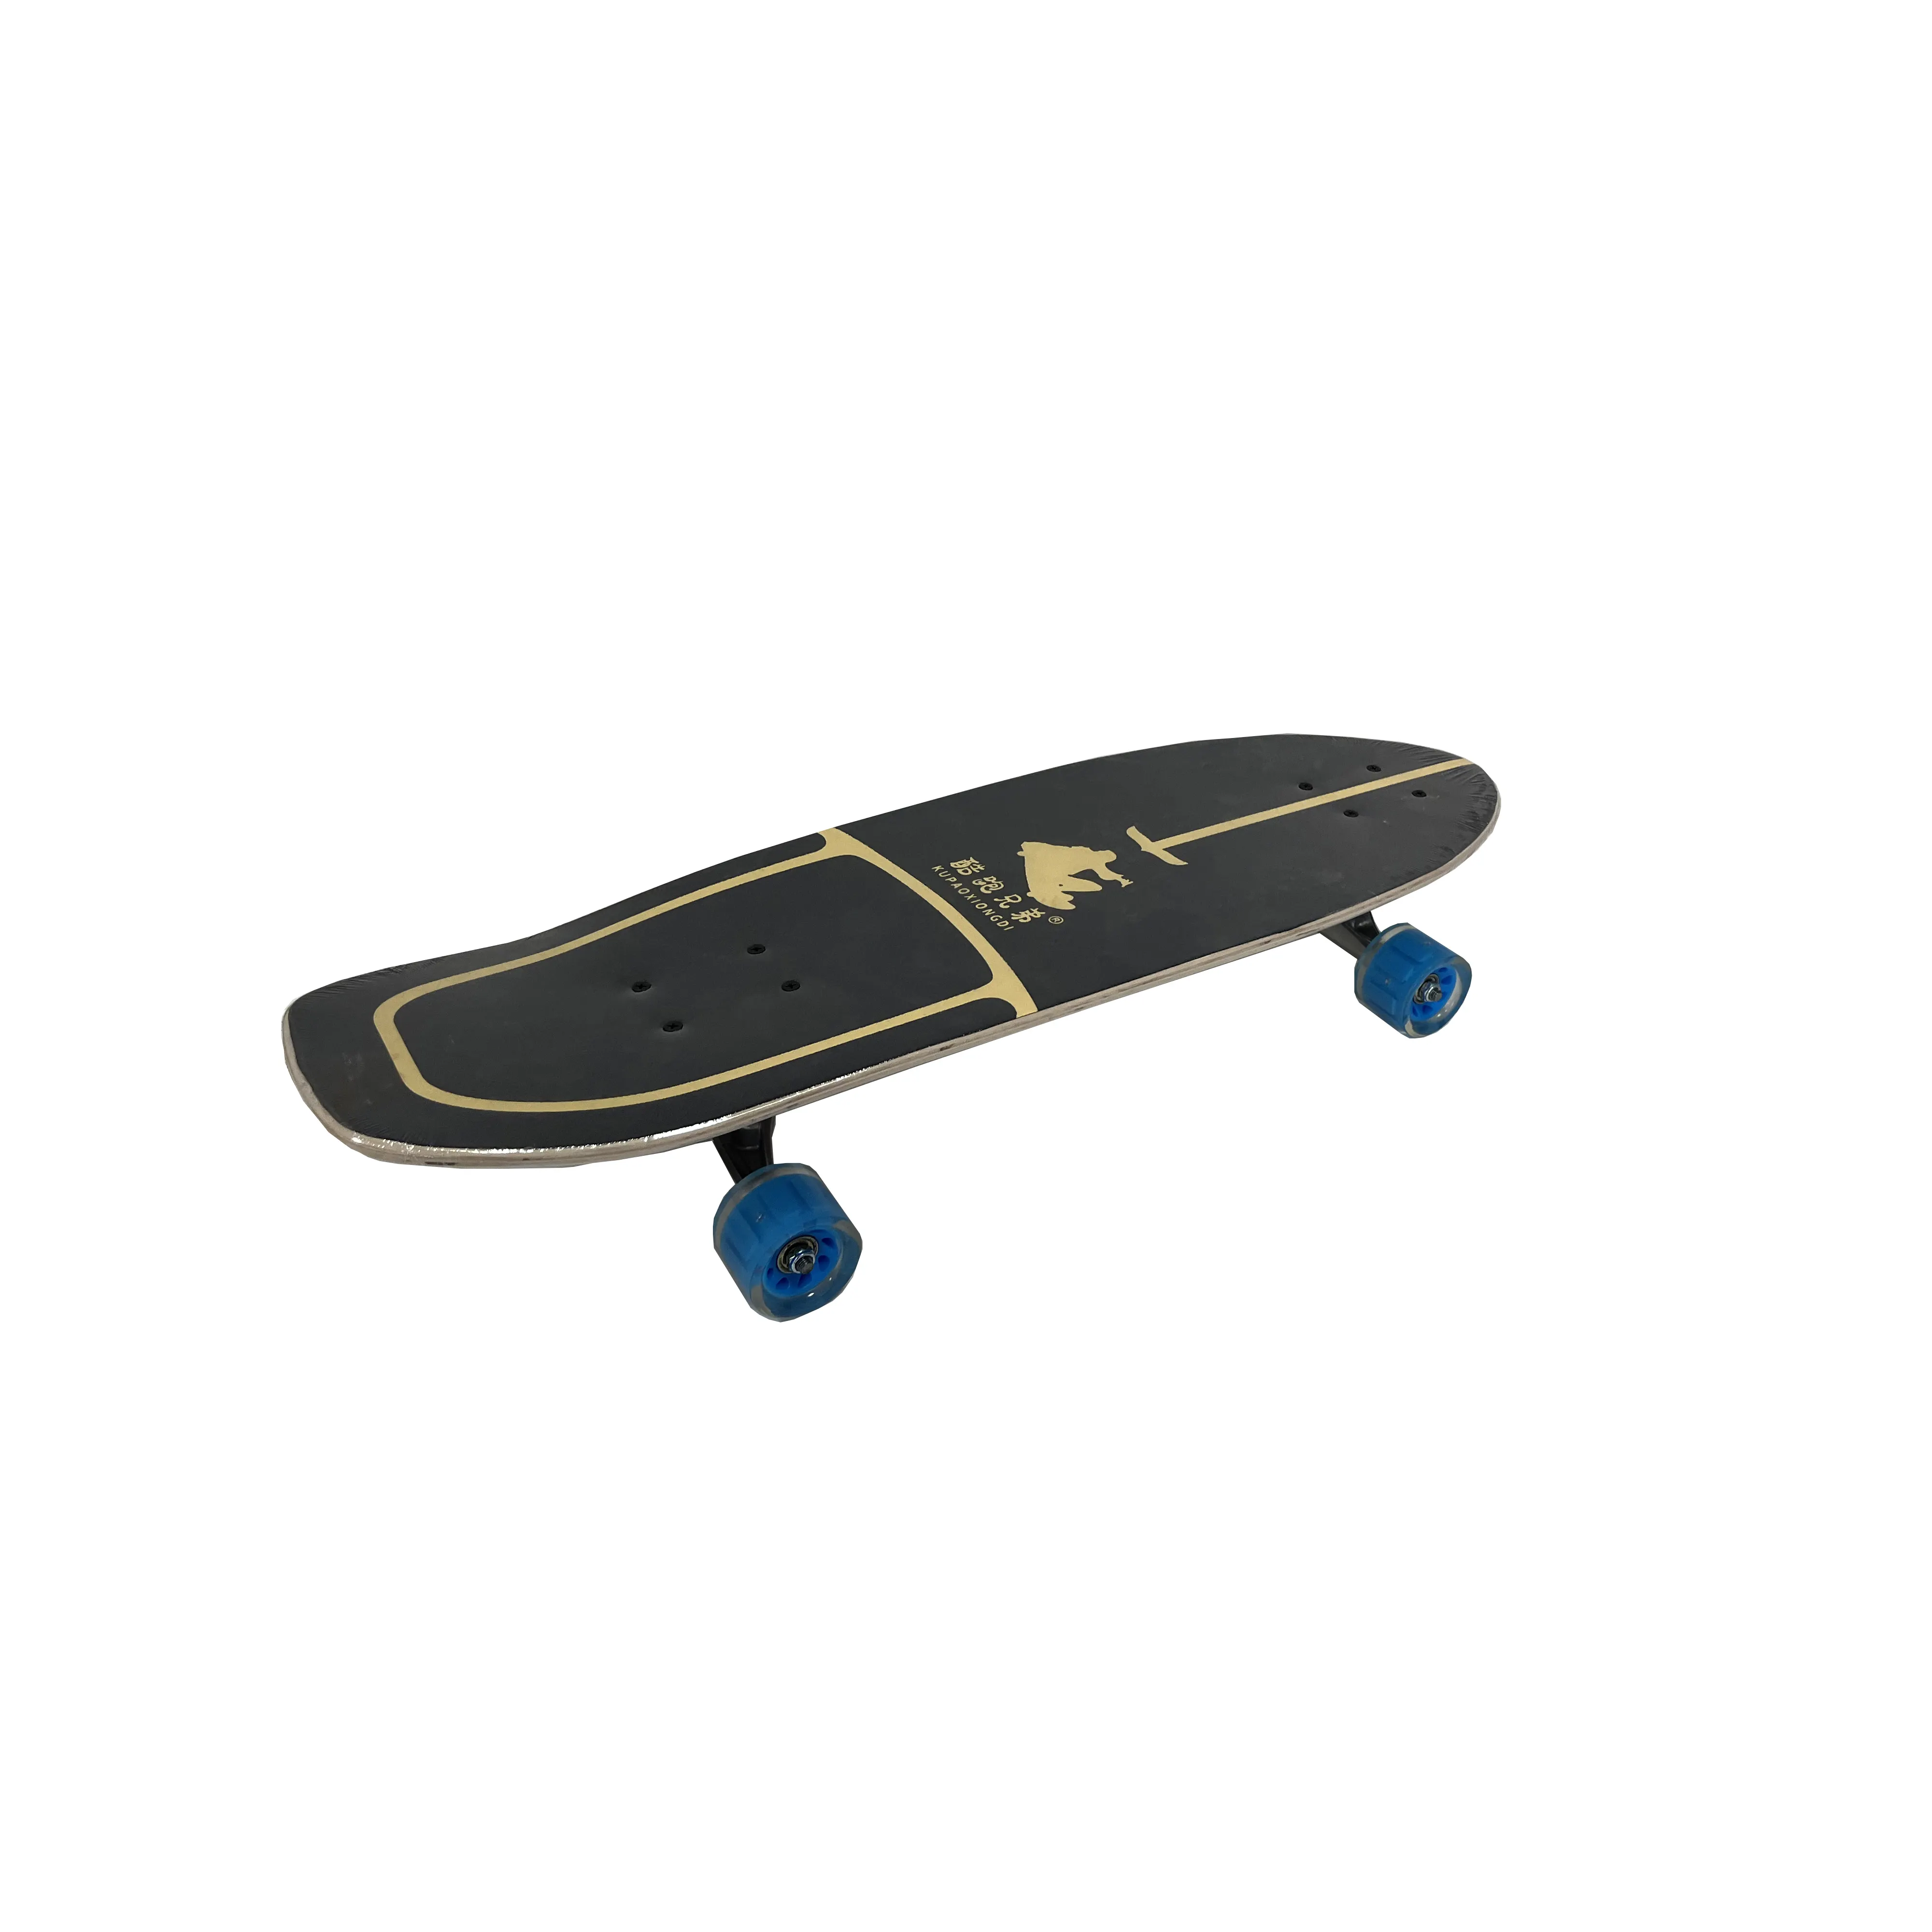 उच्च गुणवत्ता वाला लोकप्रिय सर्फ बोर्ड ब्लैंक स्केटबोर्ड डेक वुड लैंड सर्फ़बोर्ड